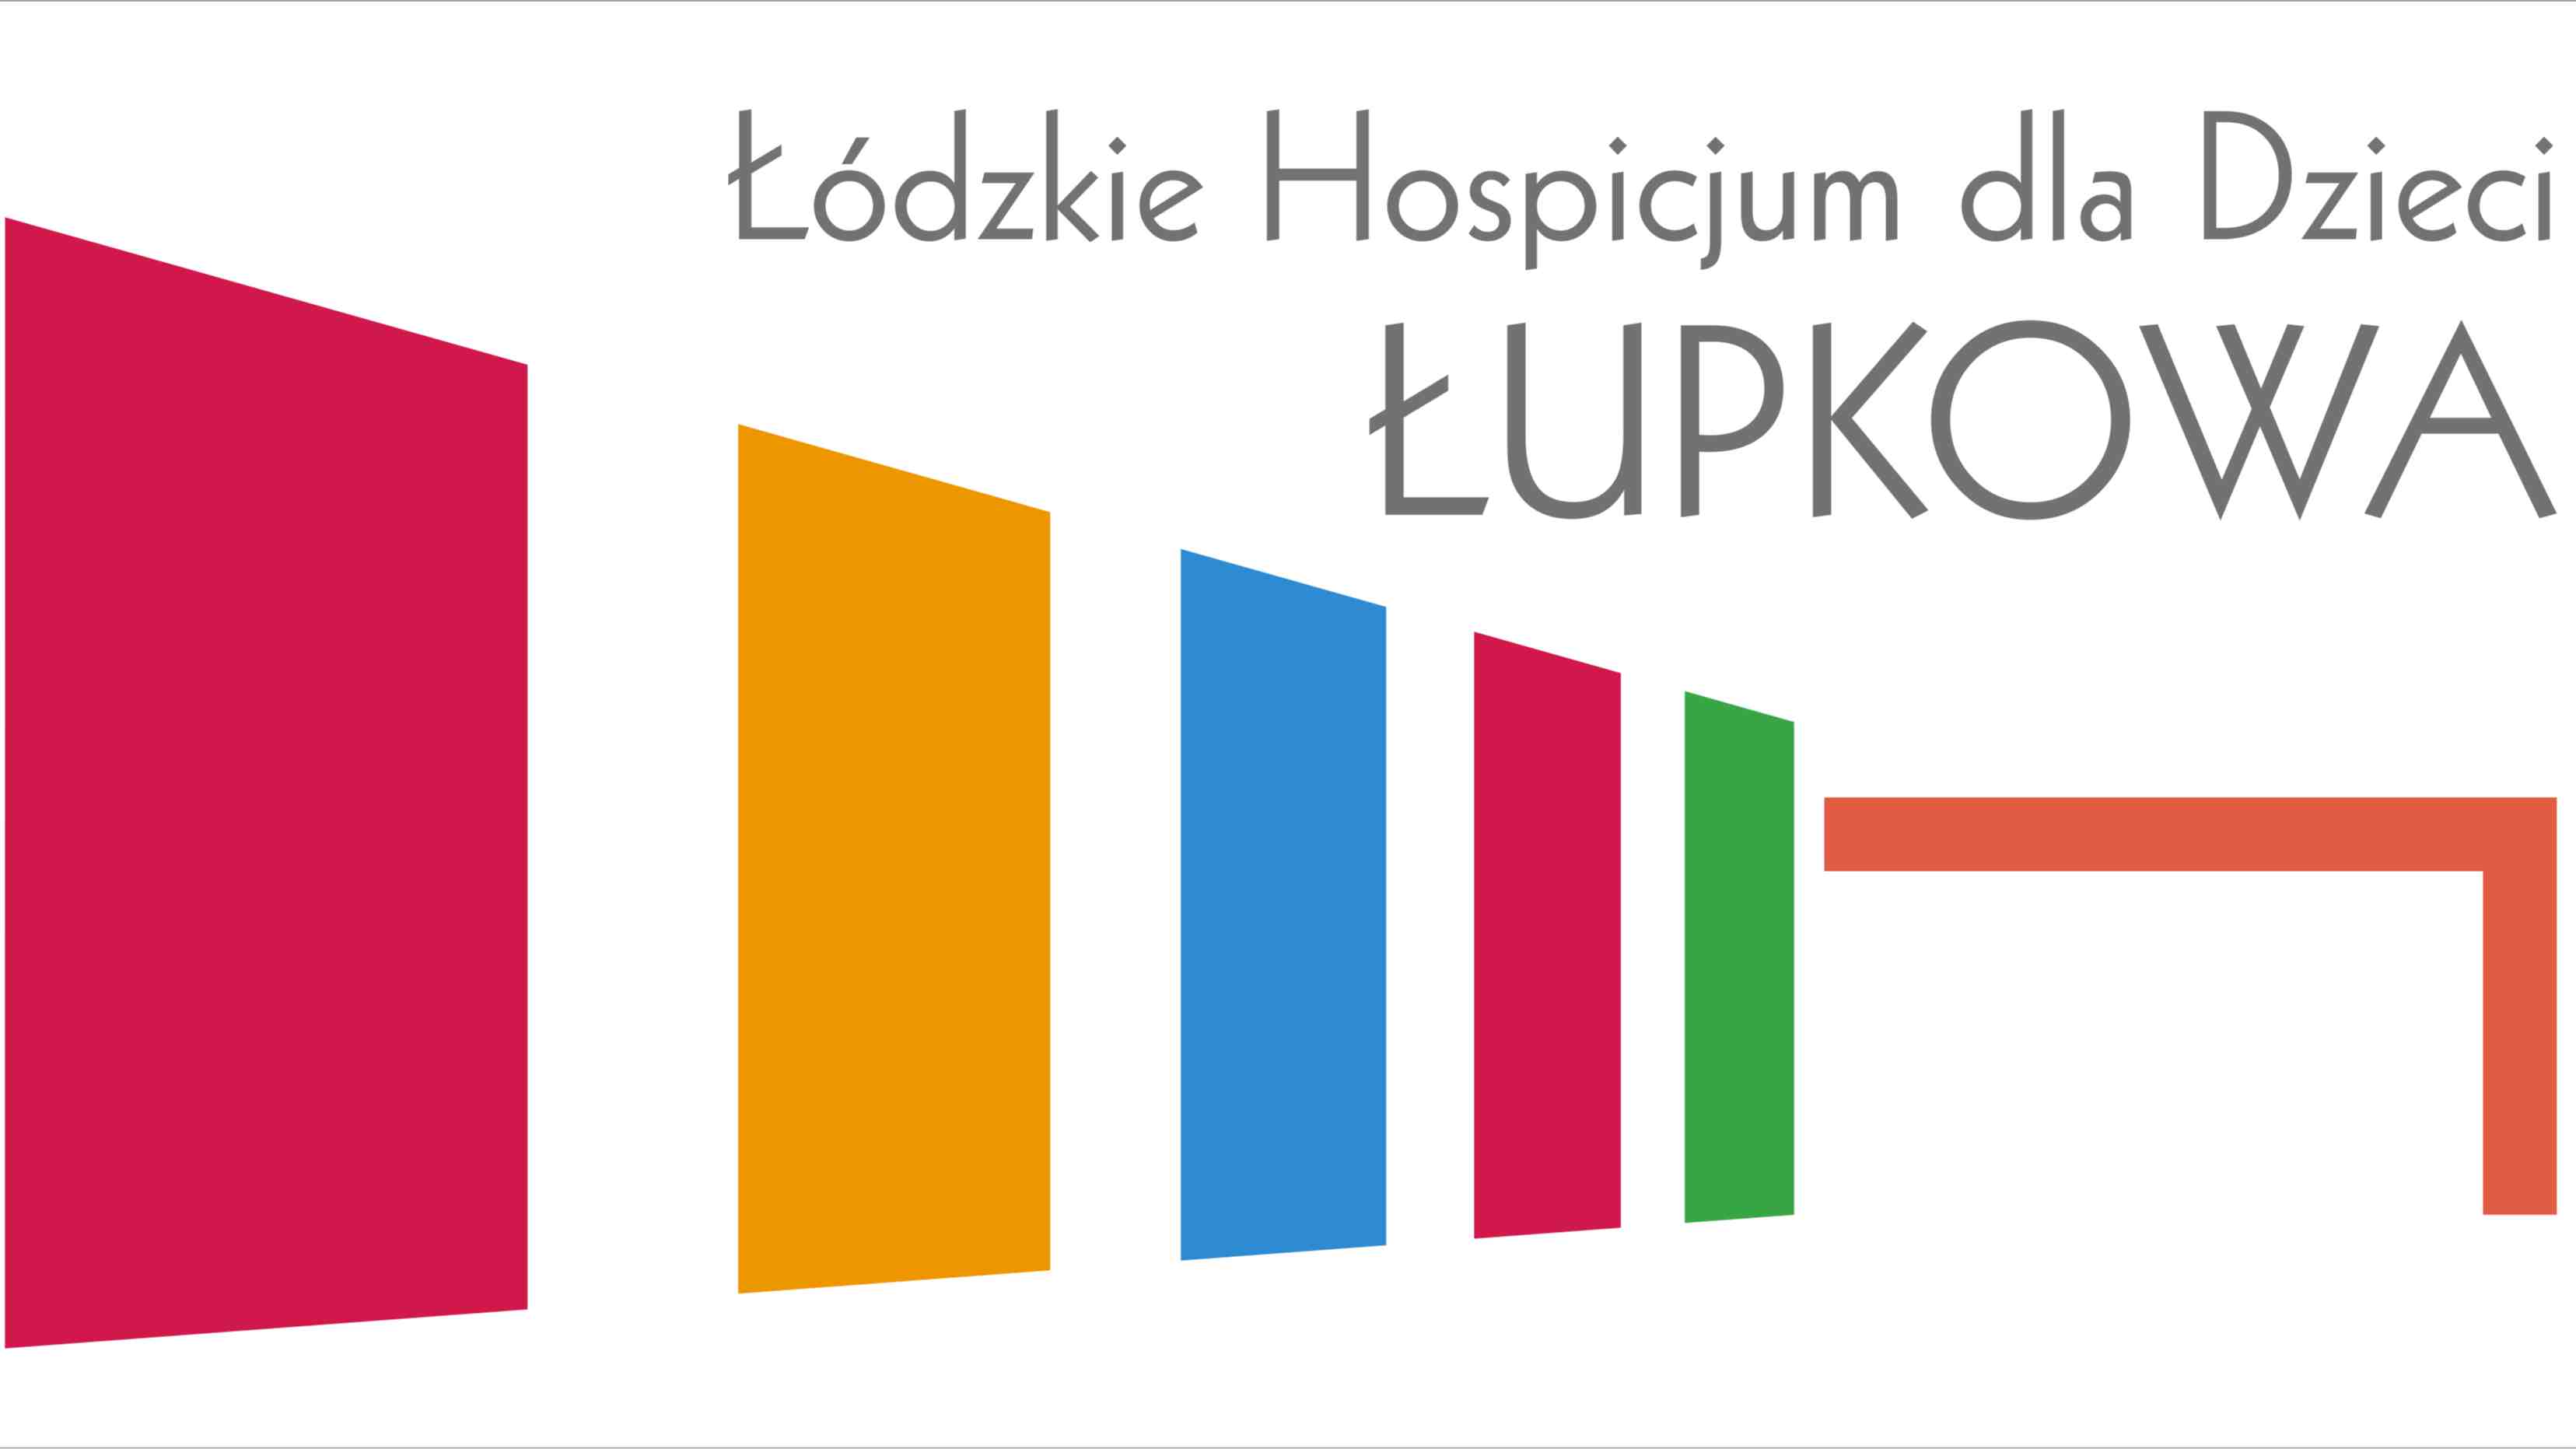 Stowarzyszenie "Łódzkie Hospicjum dla Dzieci - Łupkowa"